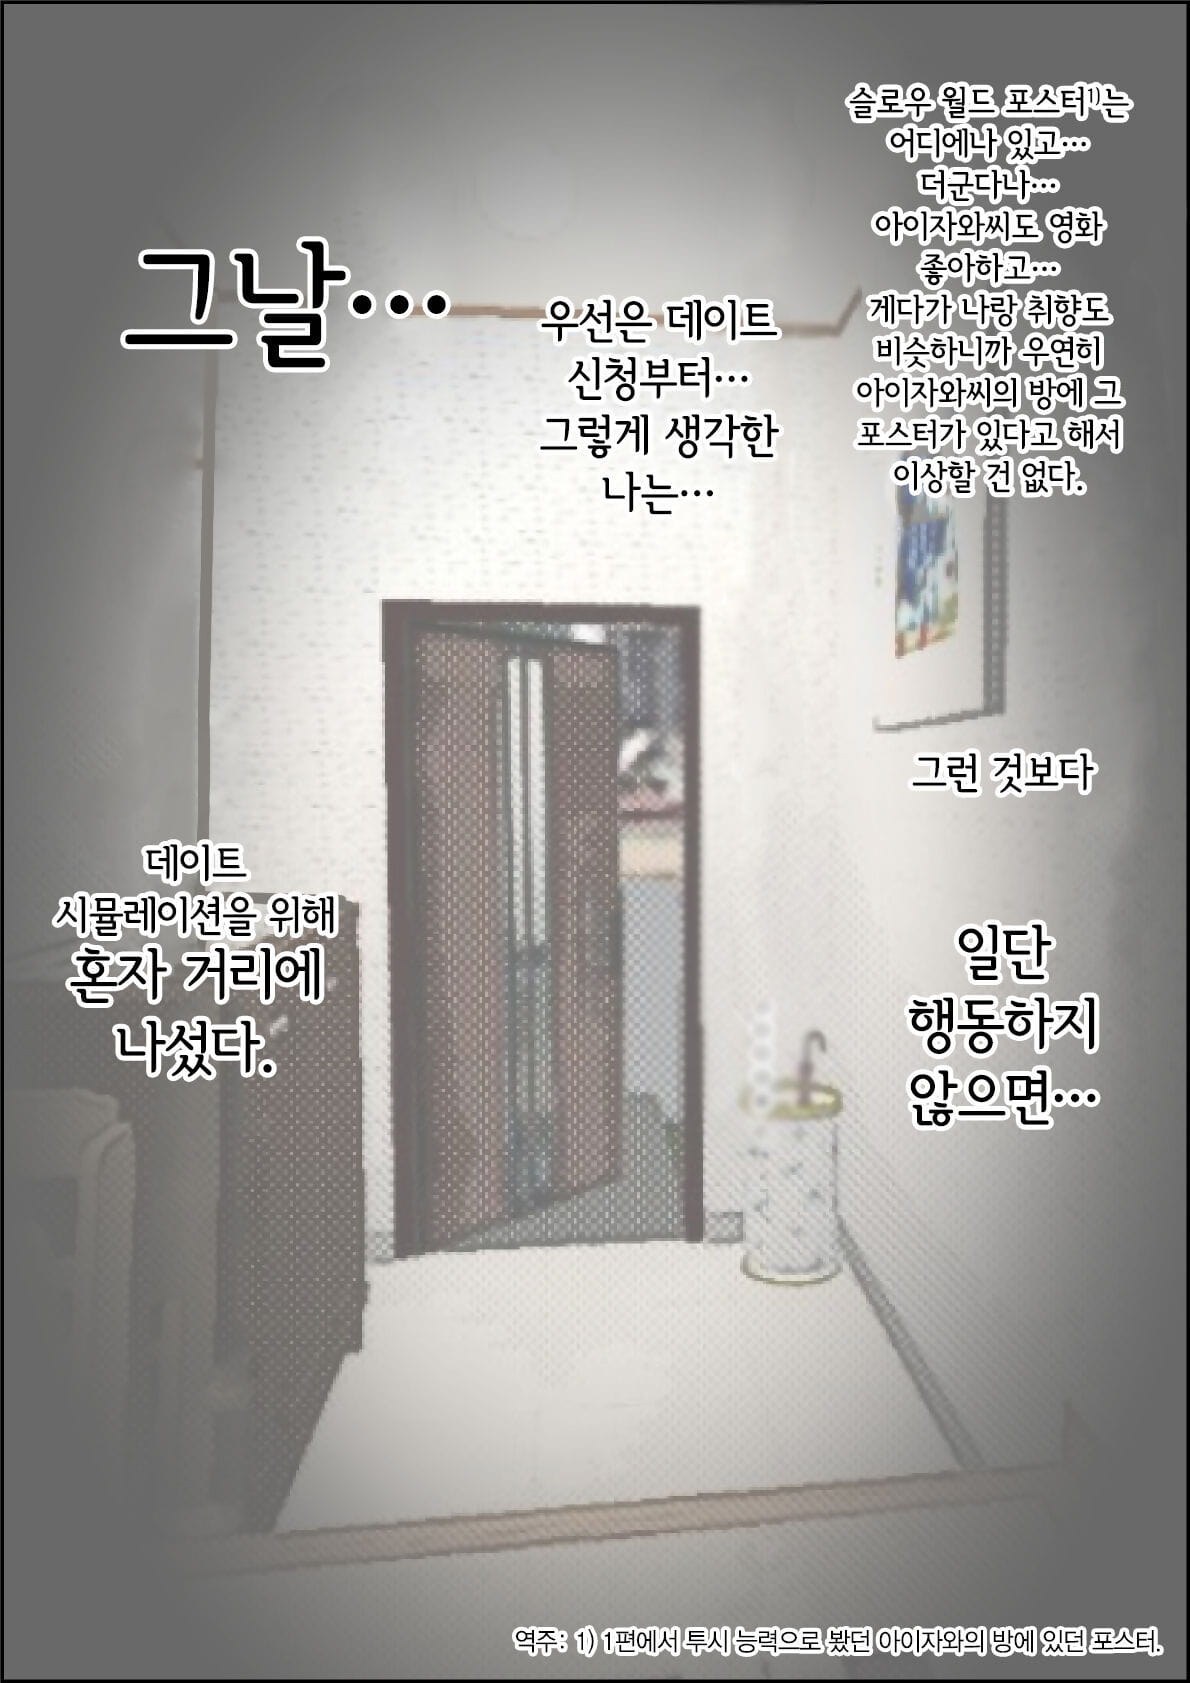 haruharudo charao ni netorare 로 1 vol.2 한국어 부품 2